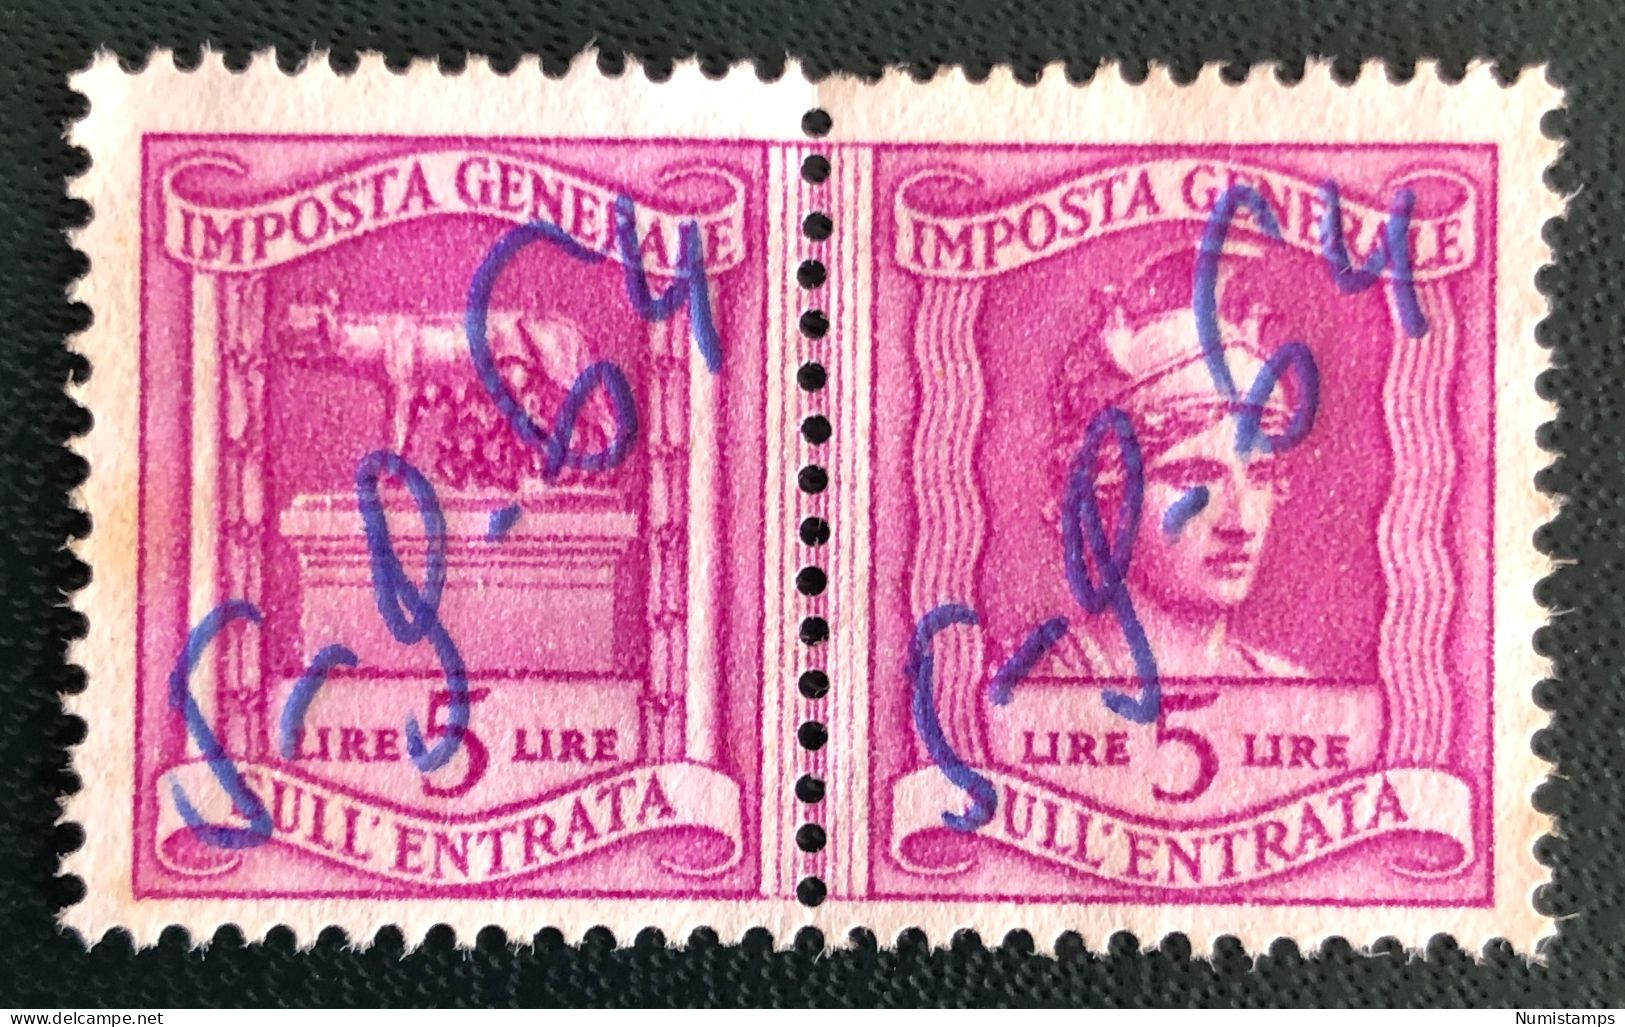 Imposta Generale Sull'entrata - Lire 5 - Revenue Stamps